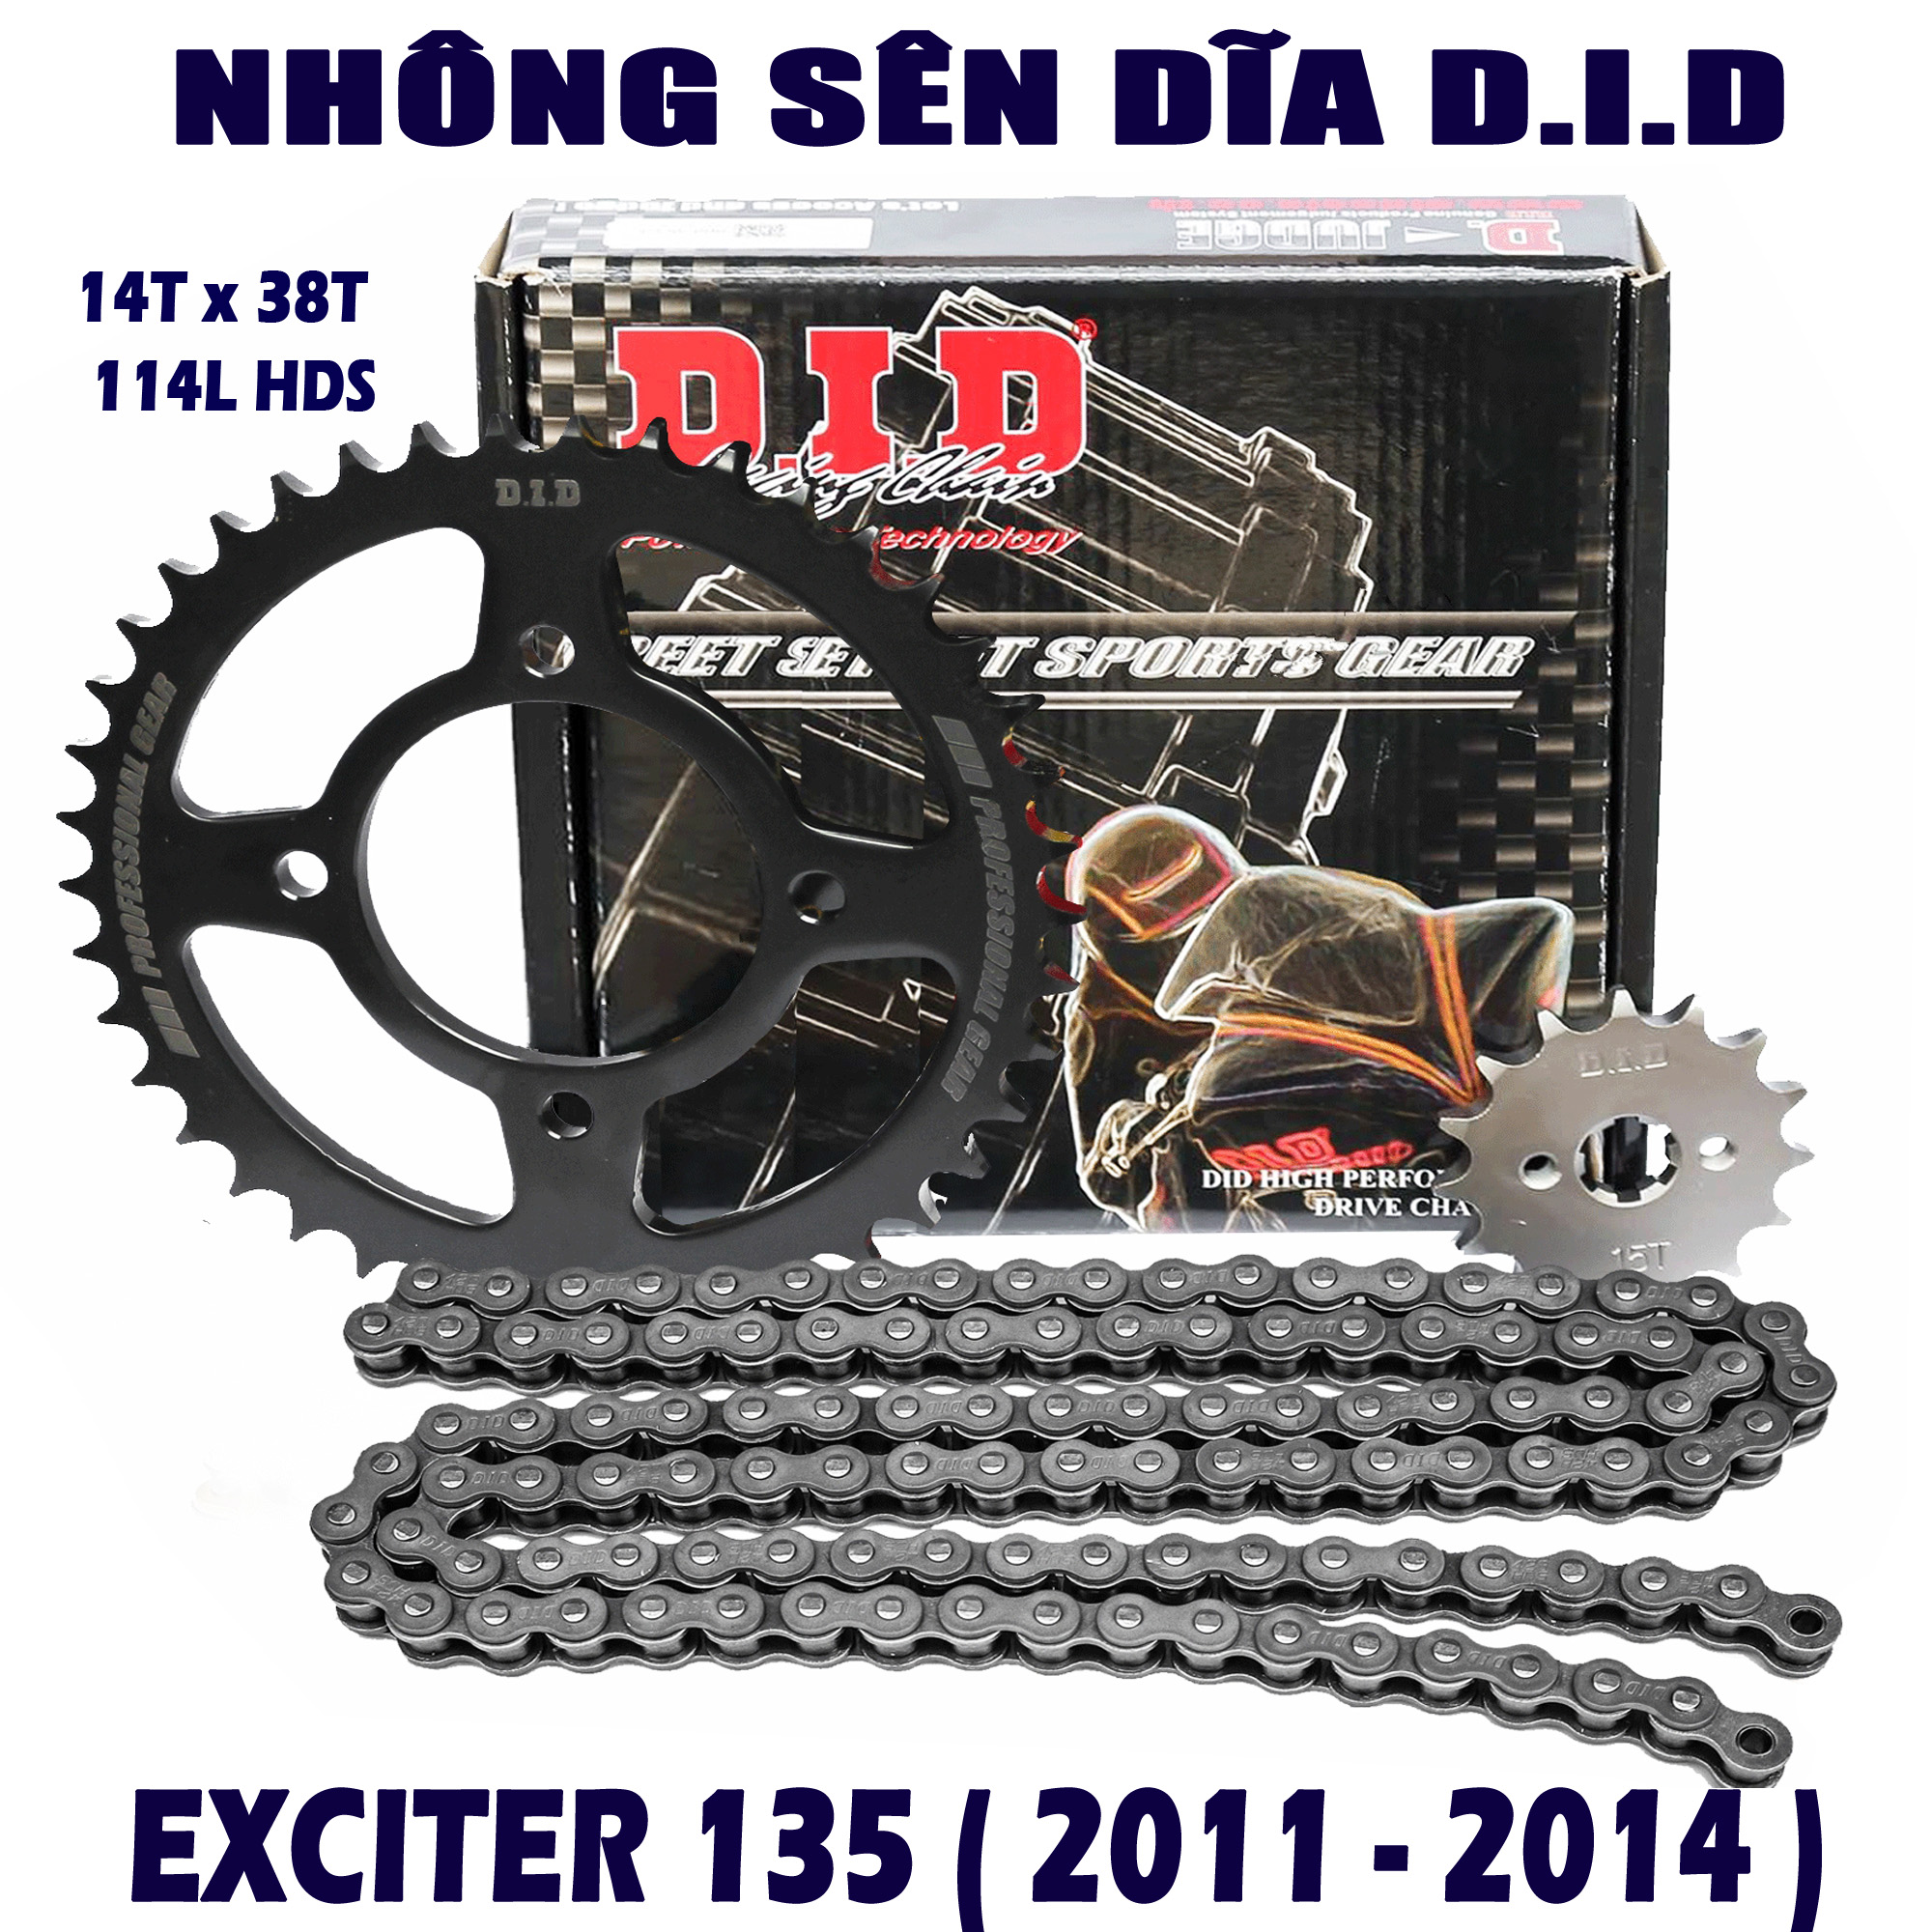 Nhông sên dĩa Exciter 135 2011 đến 2014 - Exciter 135 5 số